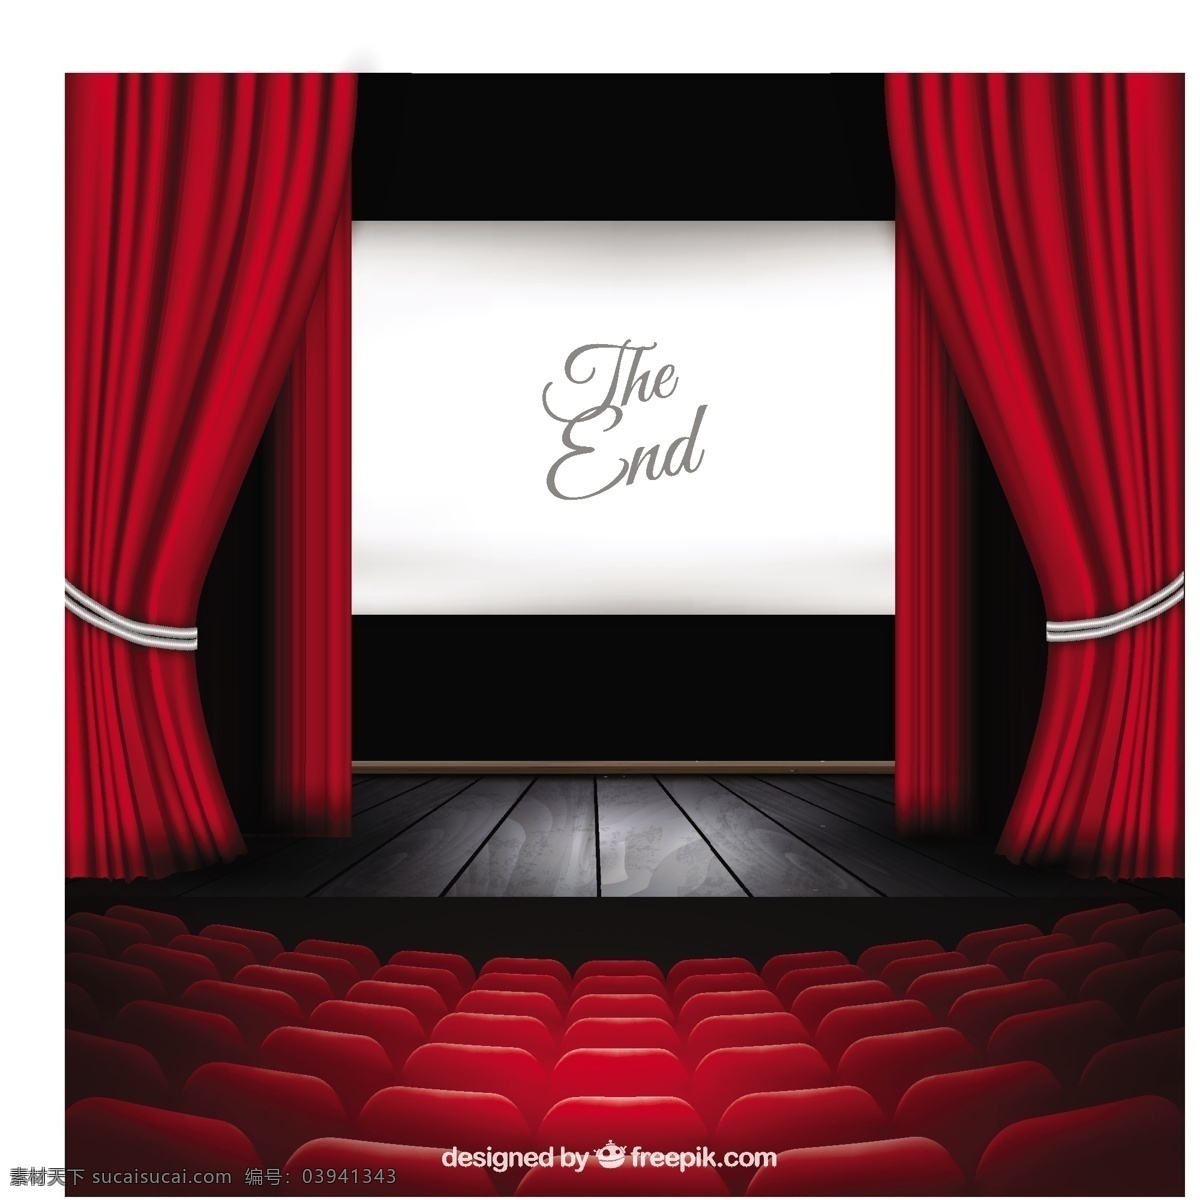 剧院舞台 影院 影片 红色 电影 舞台 窗帘 剧院 显示 屏幕 娱乐 音乐 表演 座椅 礼堂 座位